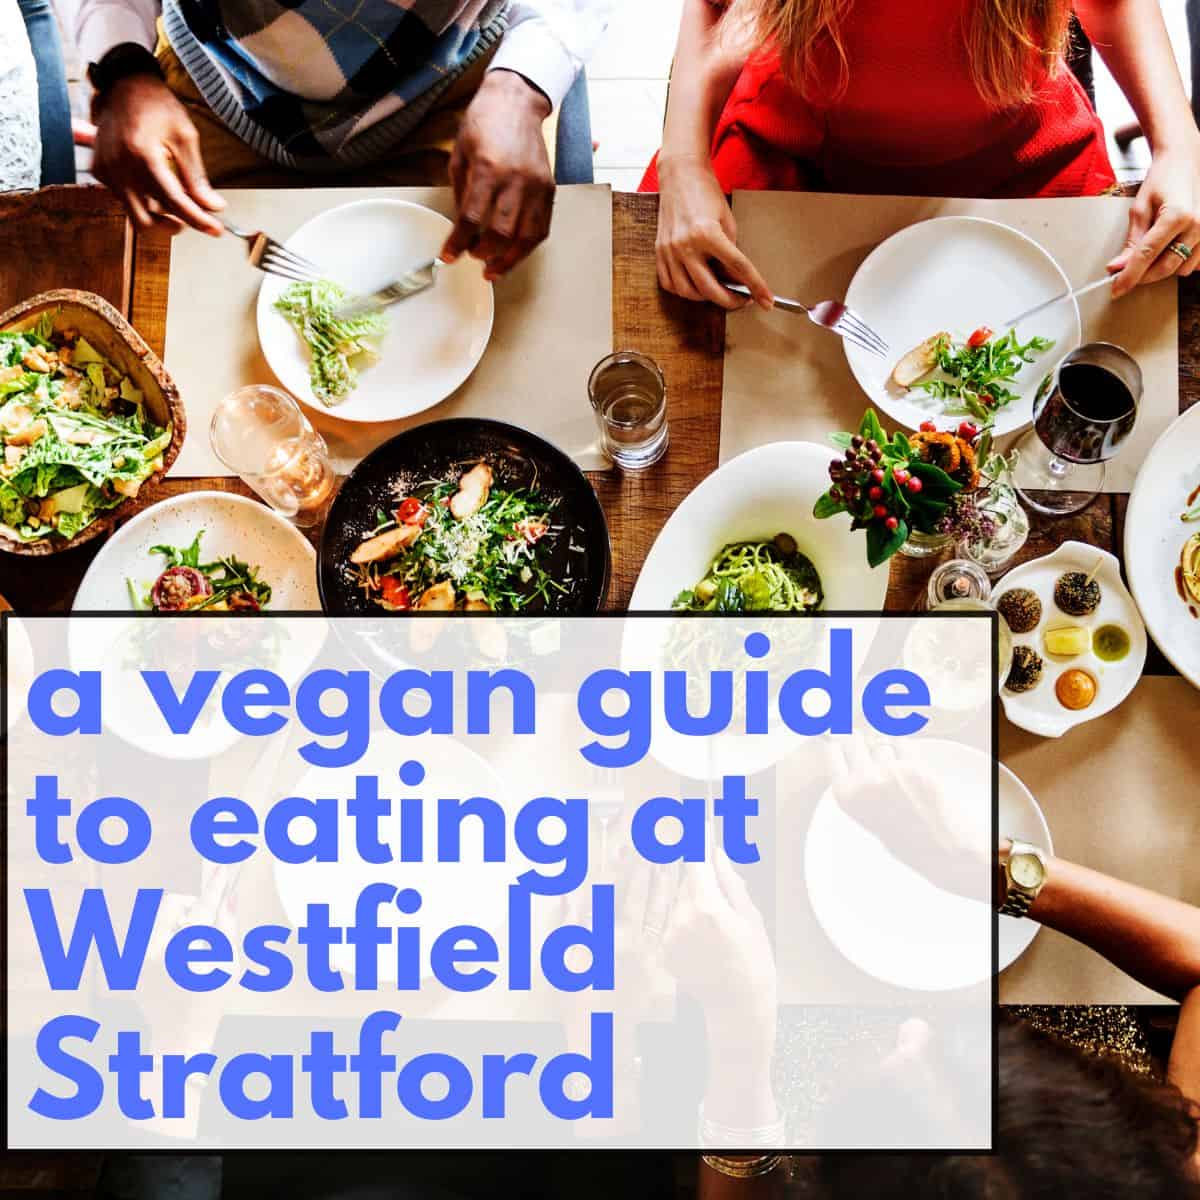 Vegan Food at Stratford